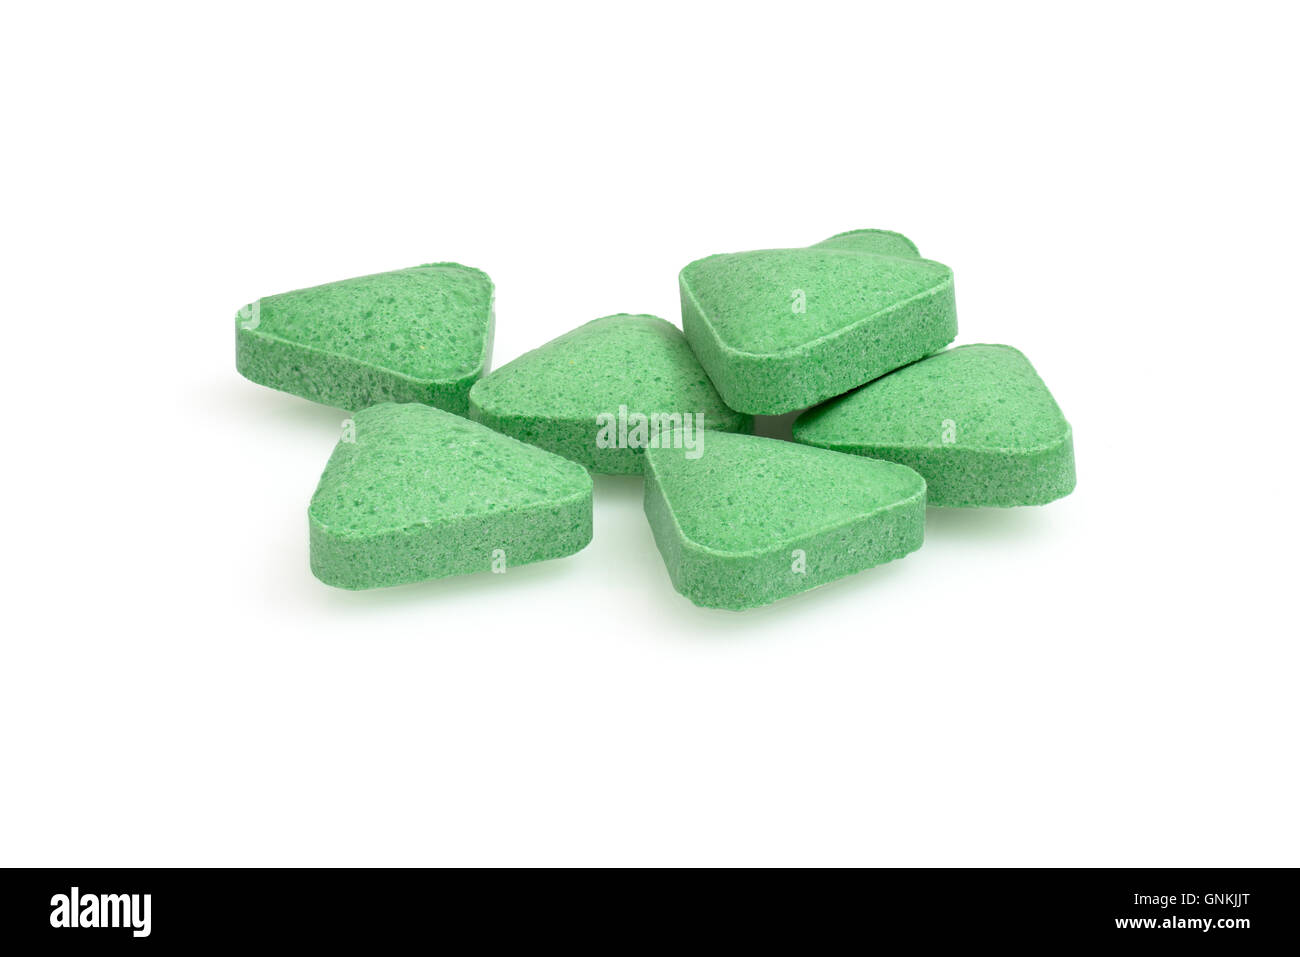 Grüne Pillen Dreiecksform schließen sich Makro Fotografie Drogen auf weißem Hintergrund Stockfoto